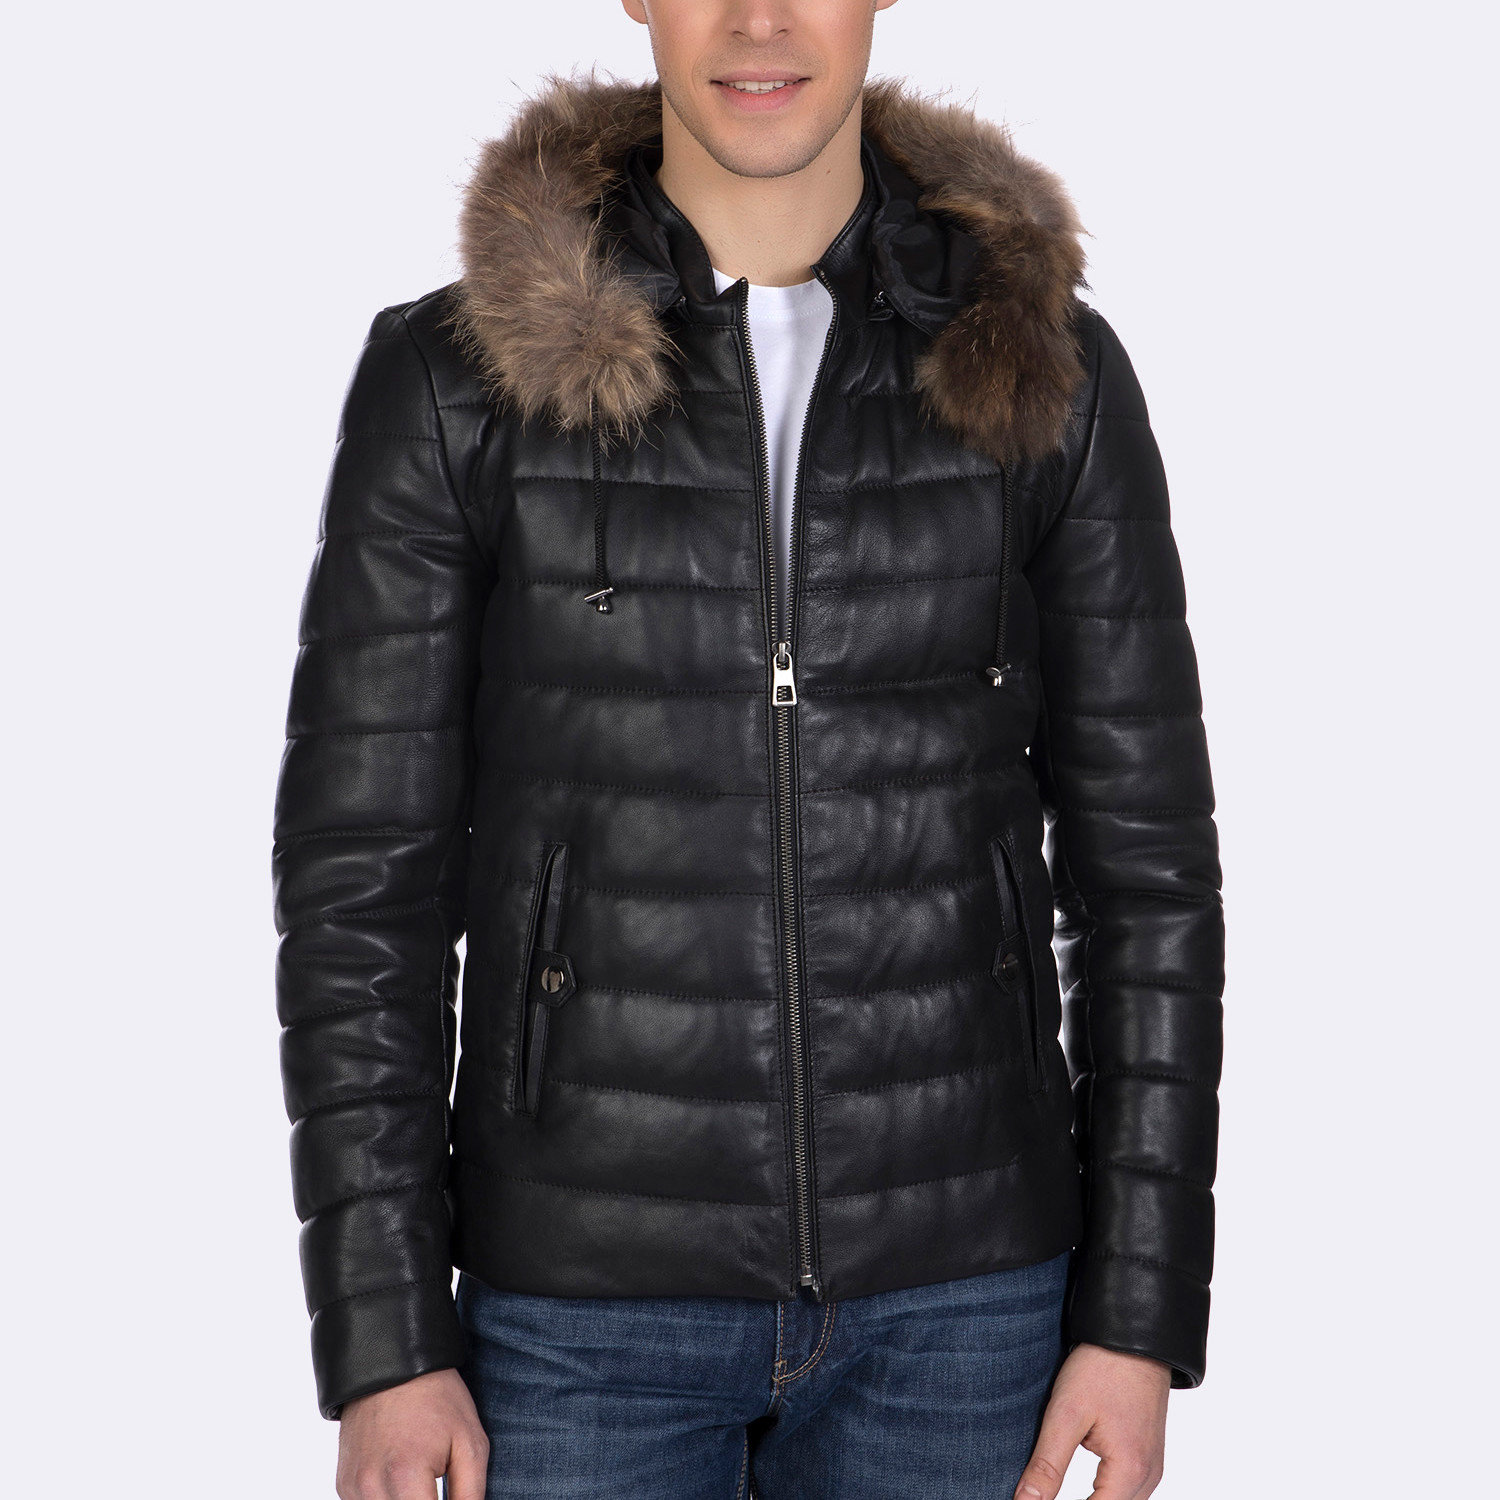 Giorgio di Mare // Ness Leather Jacket 